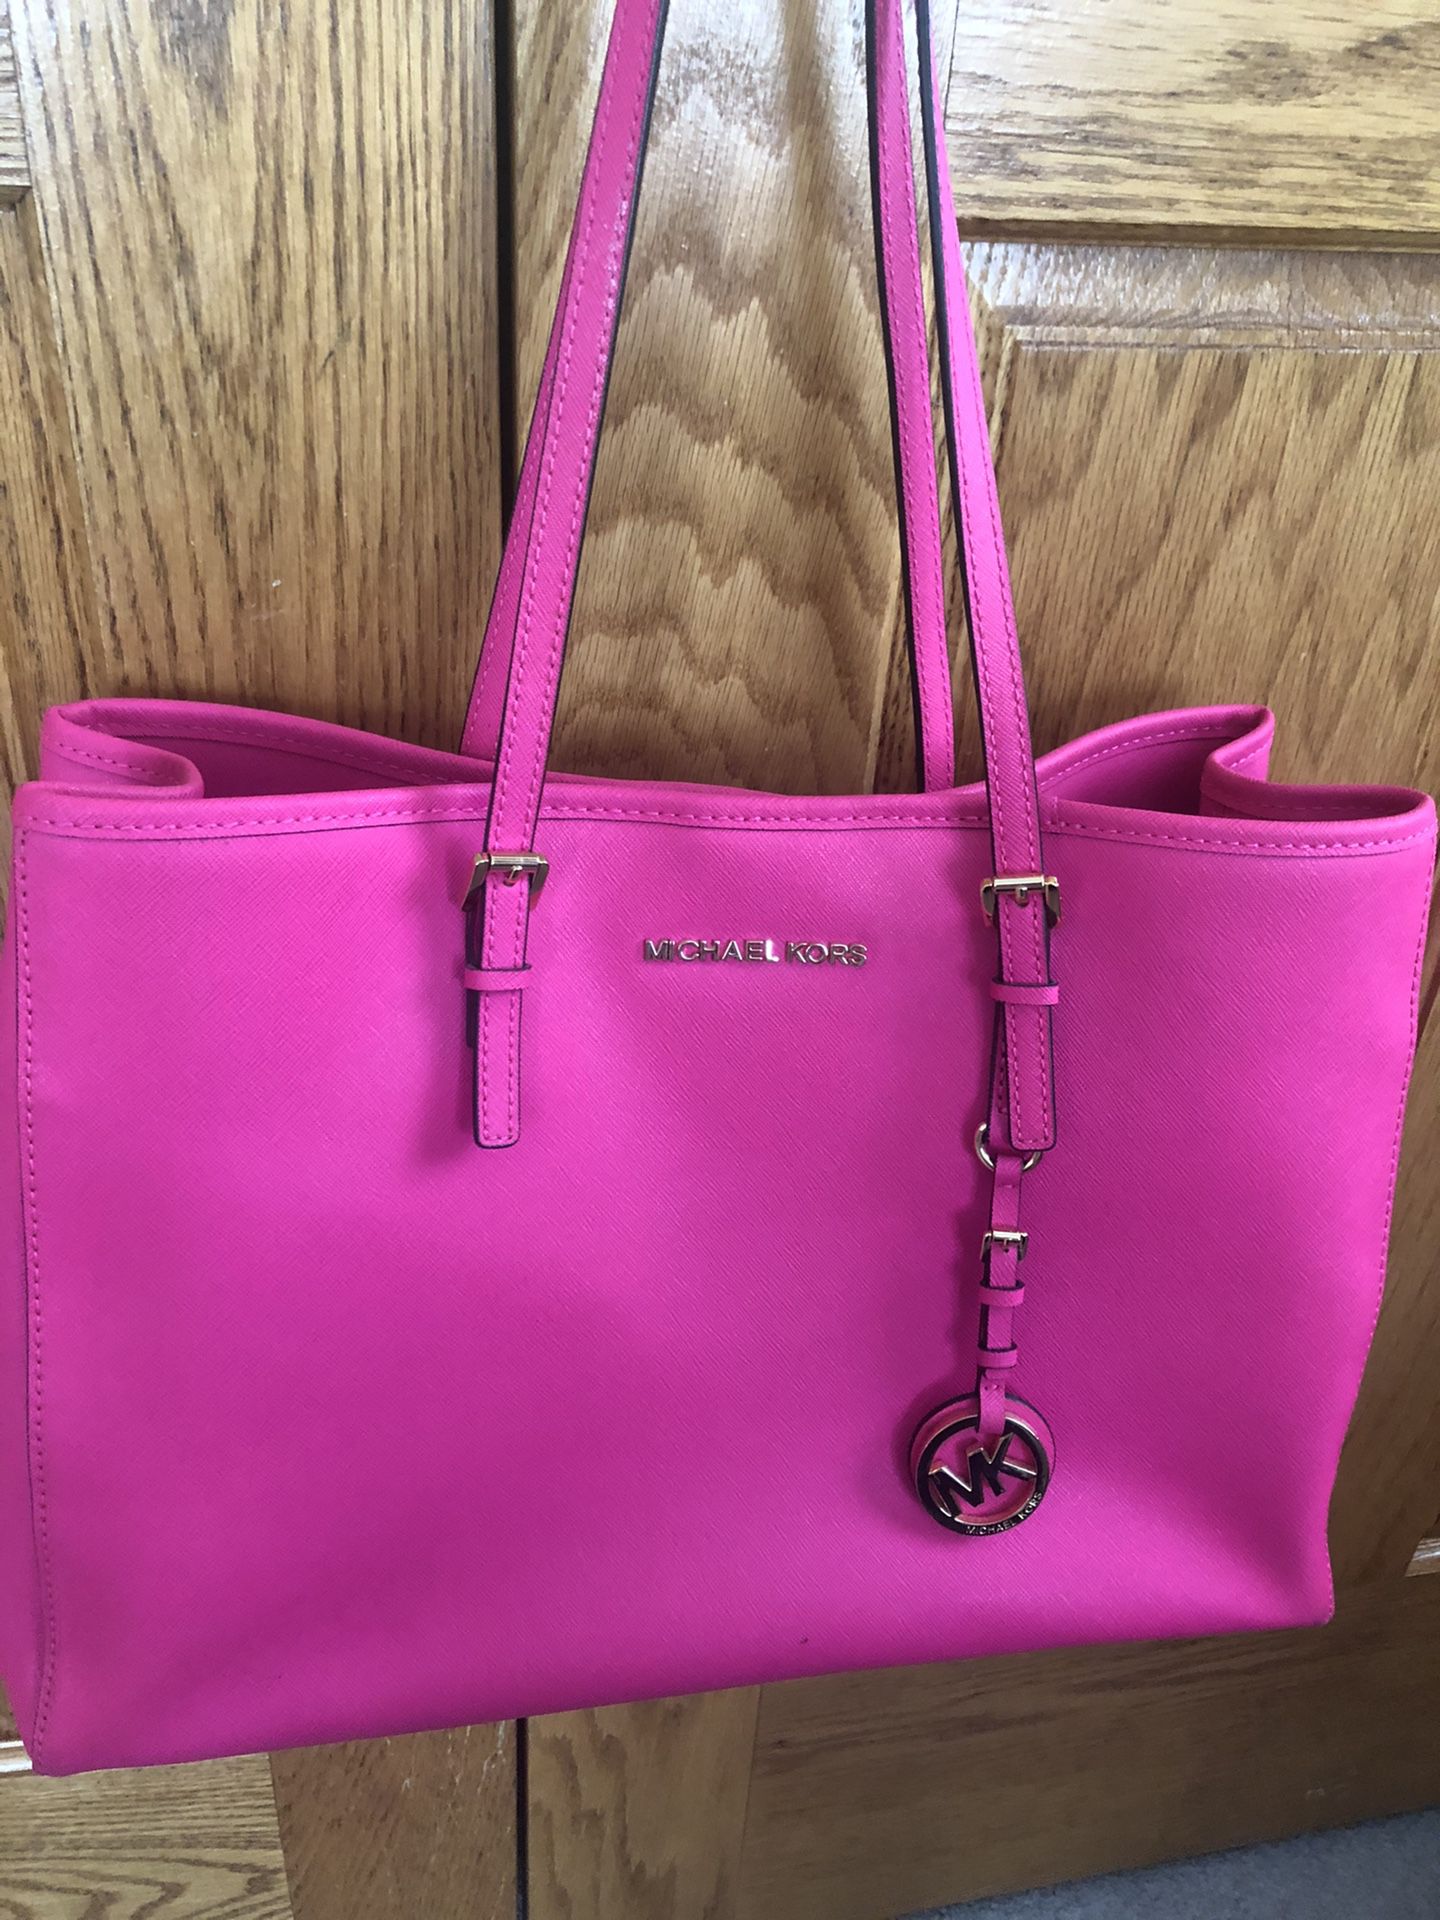 Michael Kors Pink Tote Bag